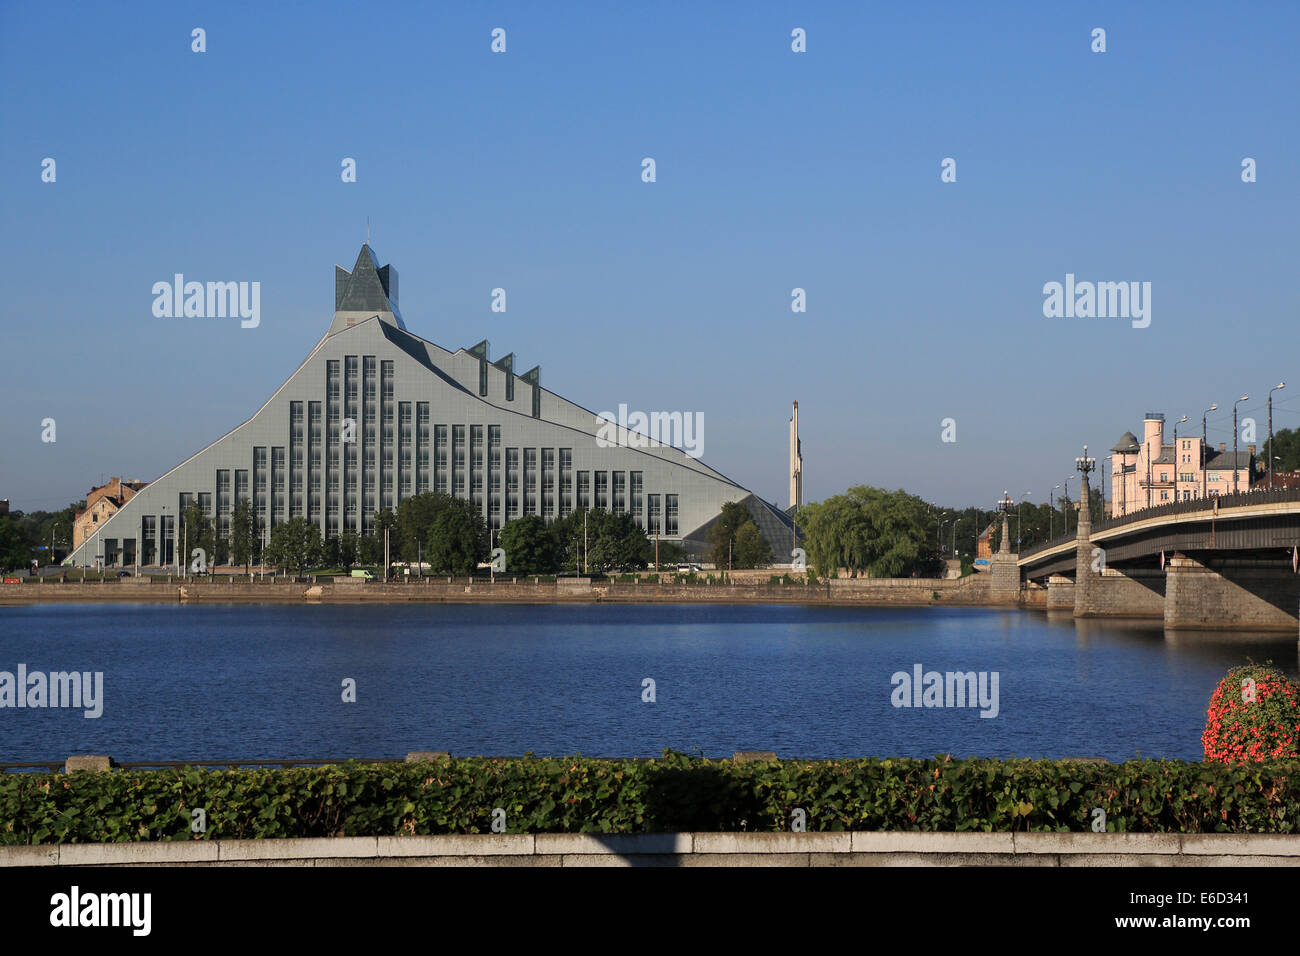 La Bibliothèque nationale de Lettonie, de la rivière Daugava, pont de pierre, Akmens incline, Riga, Lettonie Banque D'Images